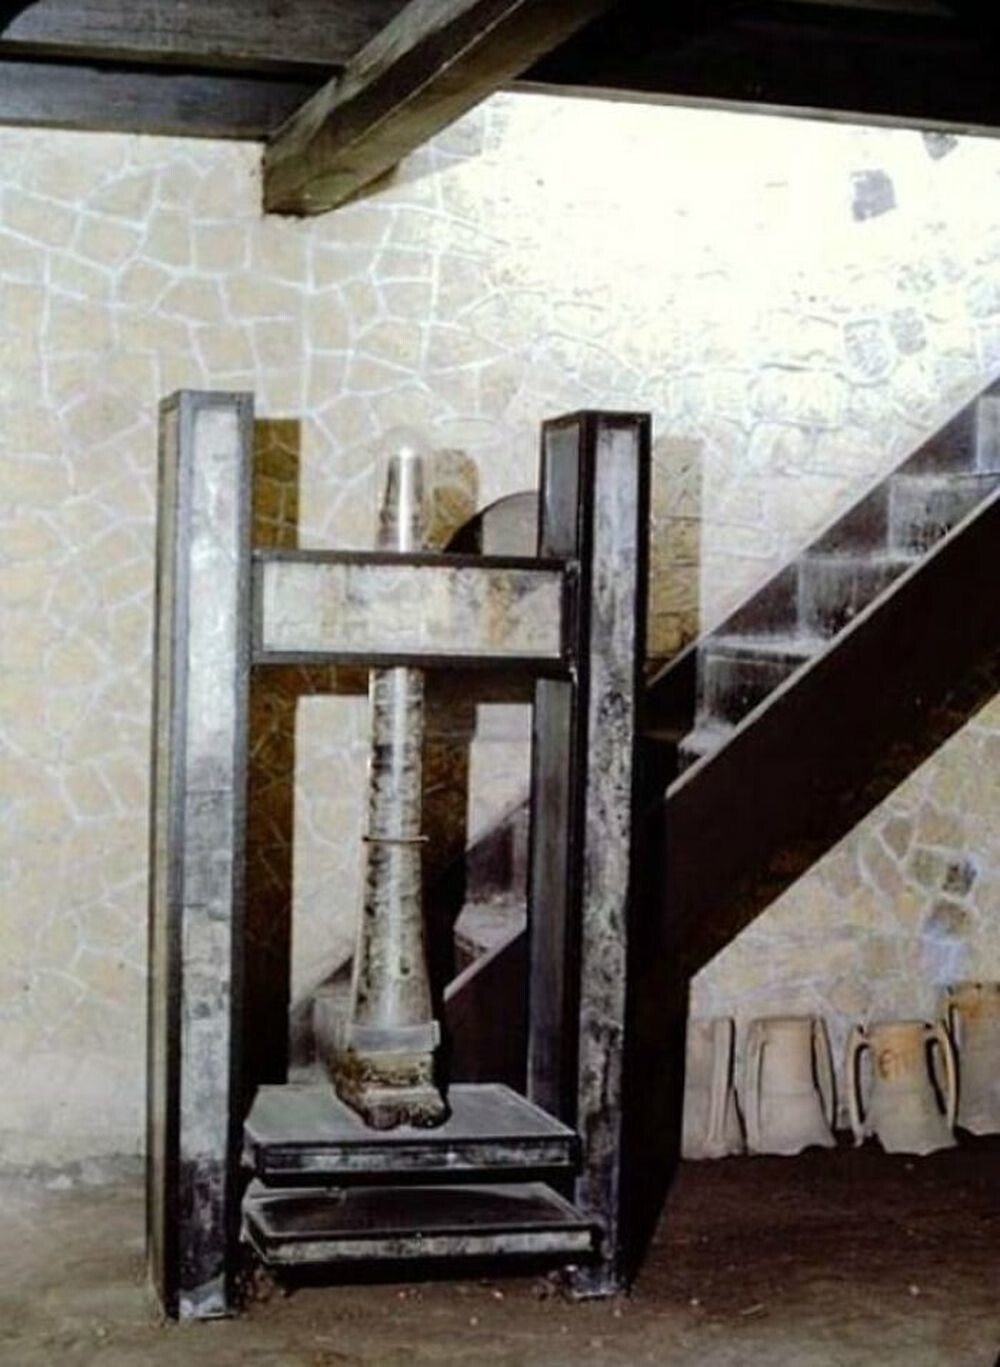 25. Фотография винтового пресса, используемого для глажки одежды, из «Bottega Del Lanarius» или мастерской Ланариуса в Геркулануме. Единственный уцелевший артефакт